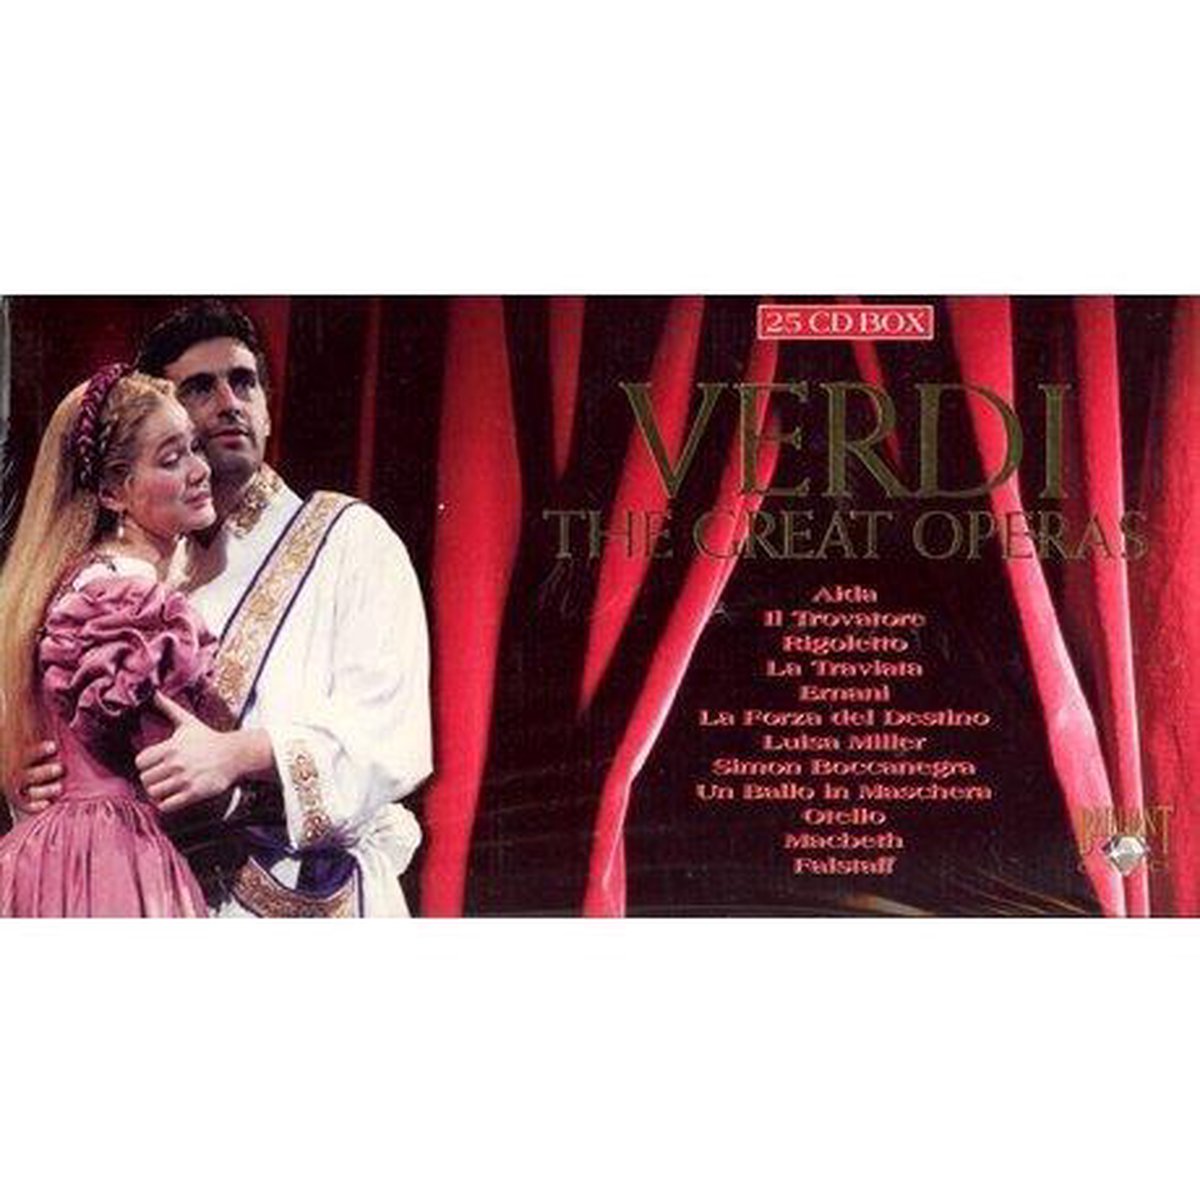 The Great Operas Verdi, various artists | CD (album) | Muziek